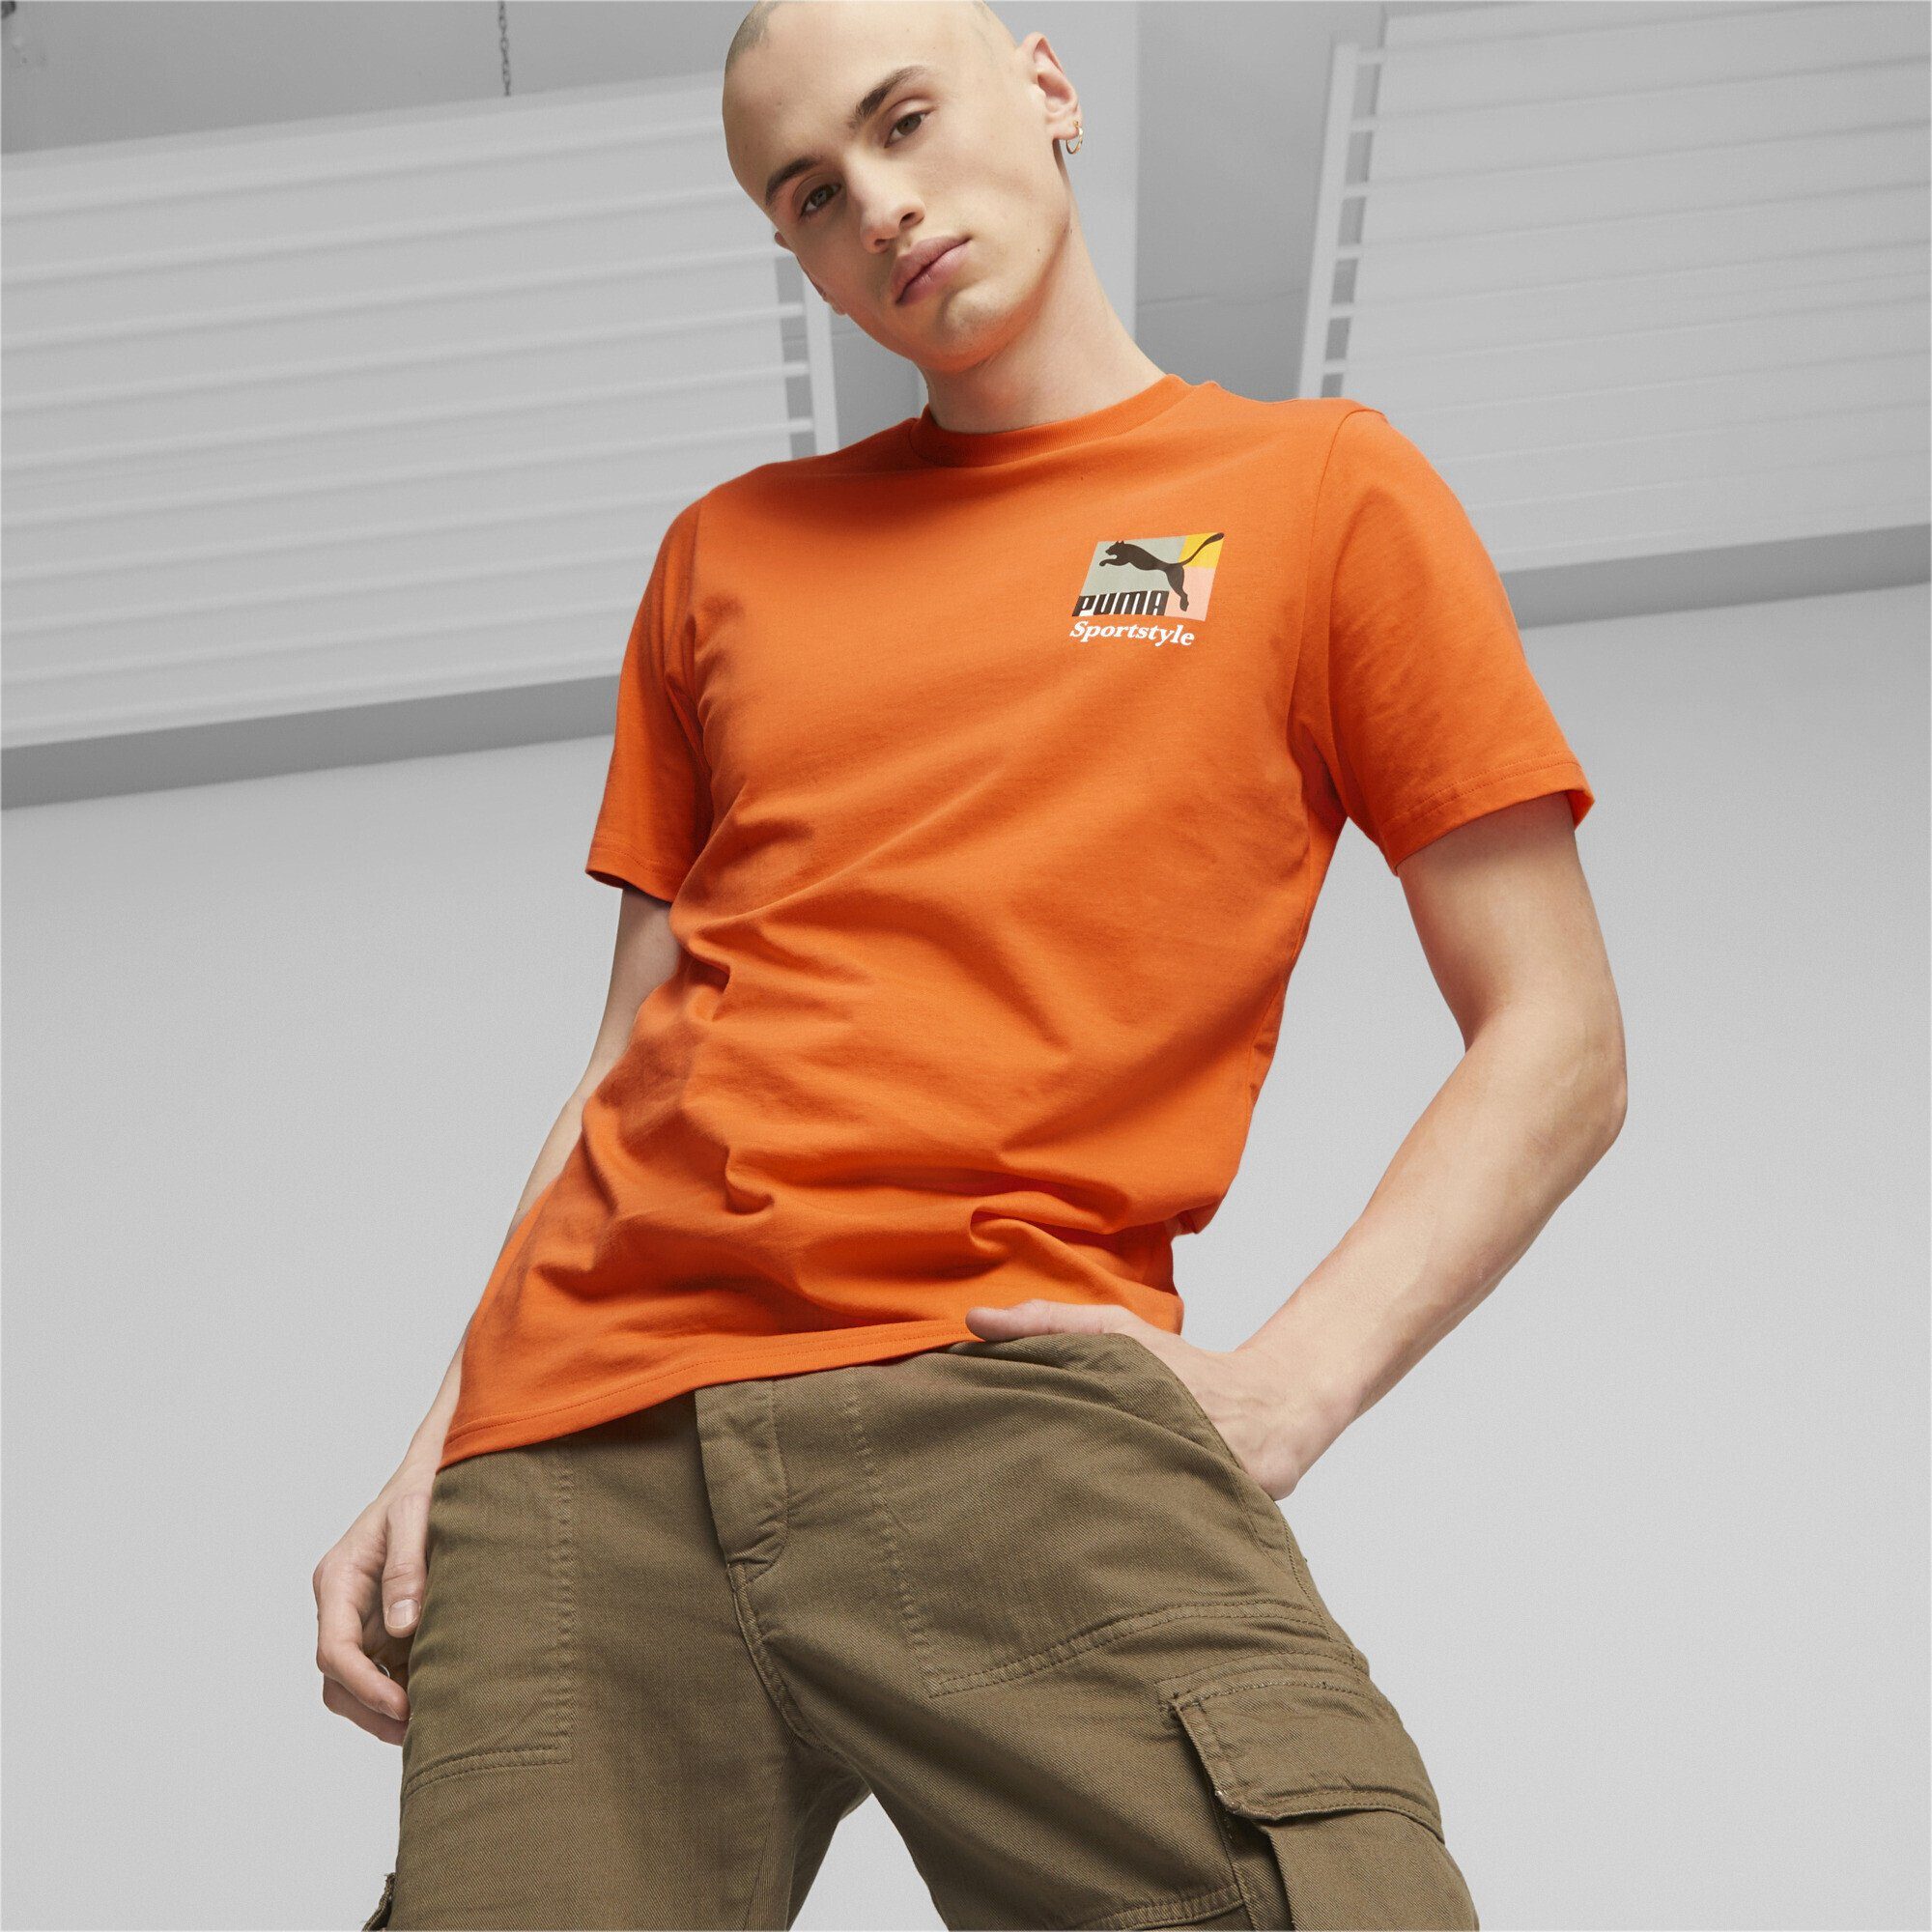 PUMA T-Shirt Classics Orange T-Shirt Love Heat Brand Hot Herren